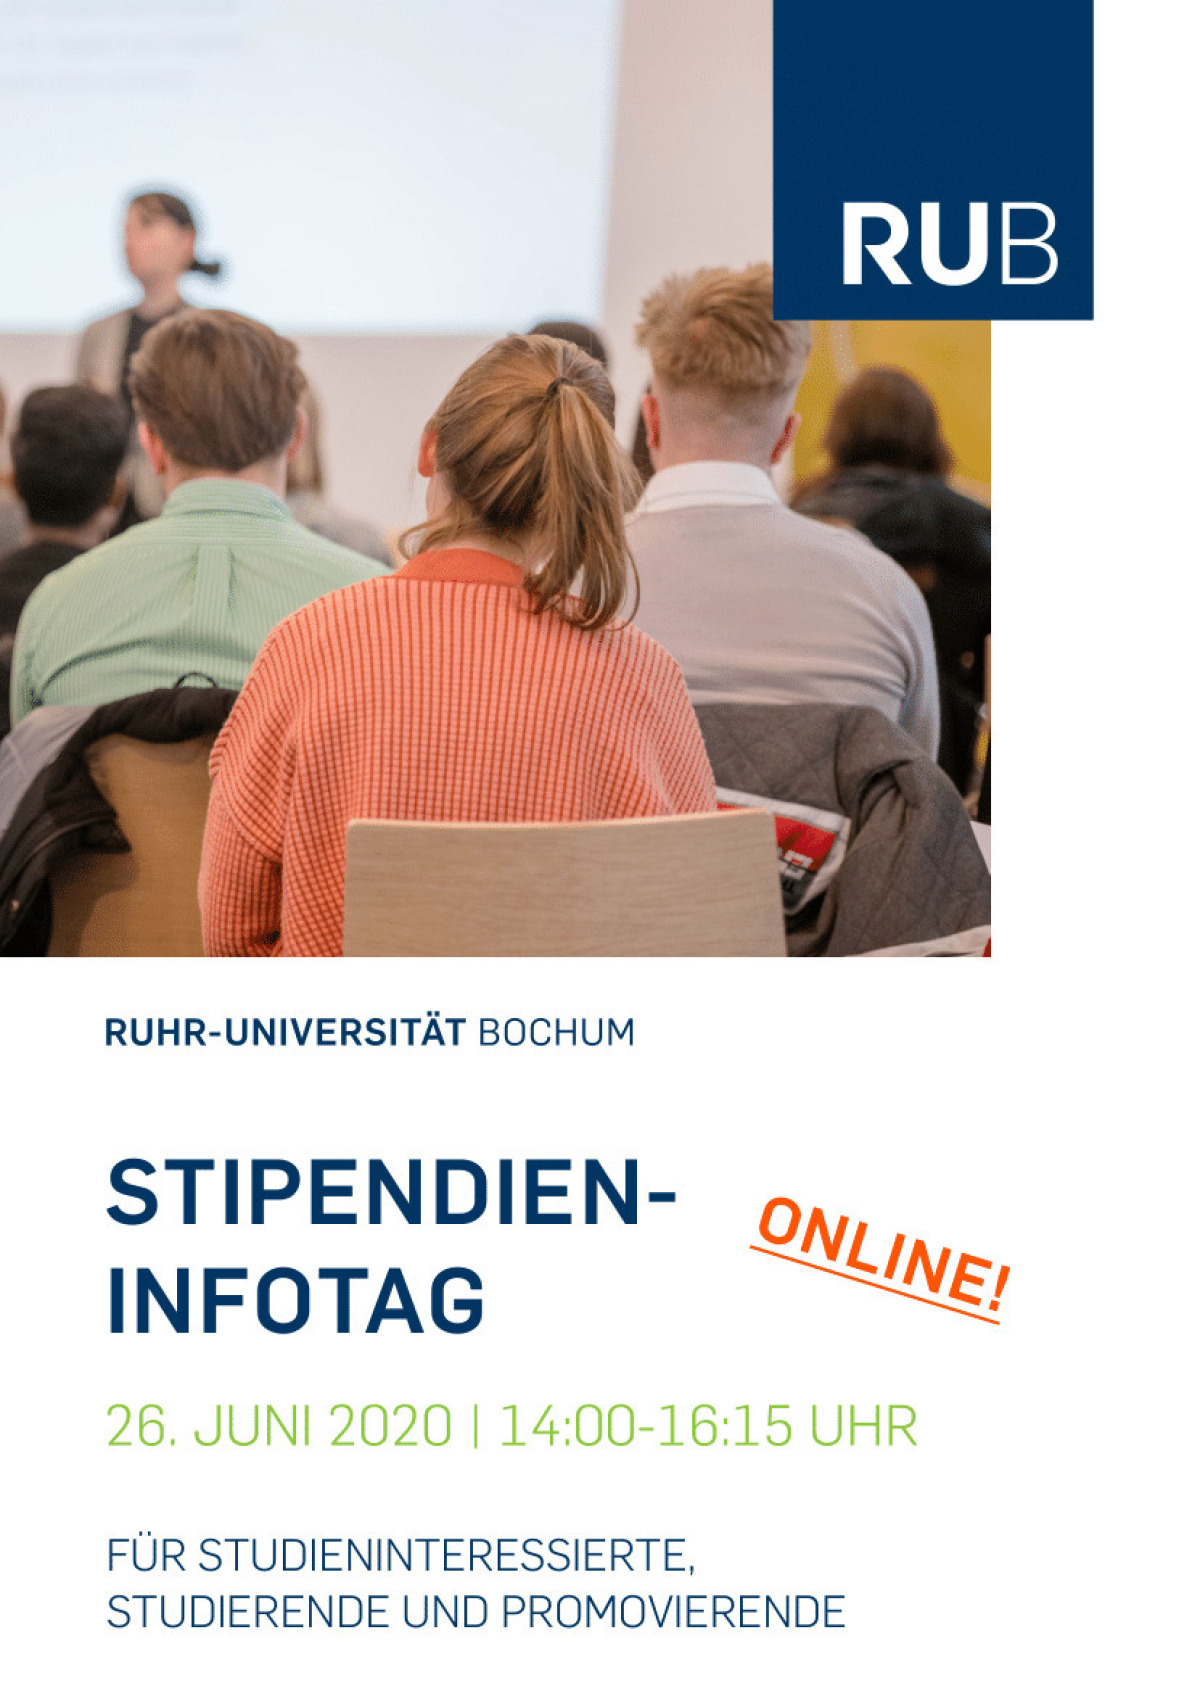 Der Flyer für eine Stipendiumsveranstaltung an der Ruhruni Bochum